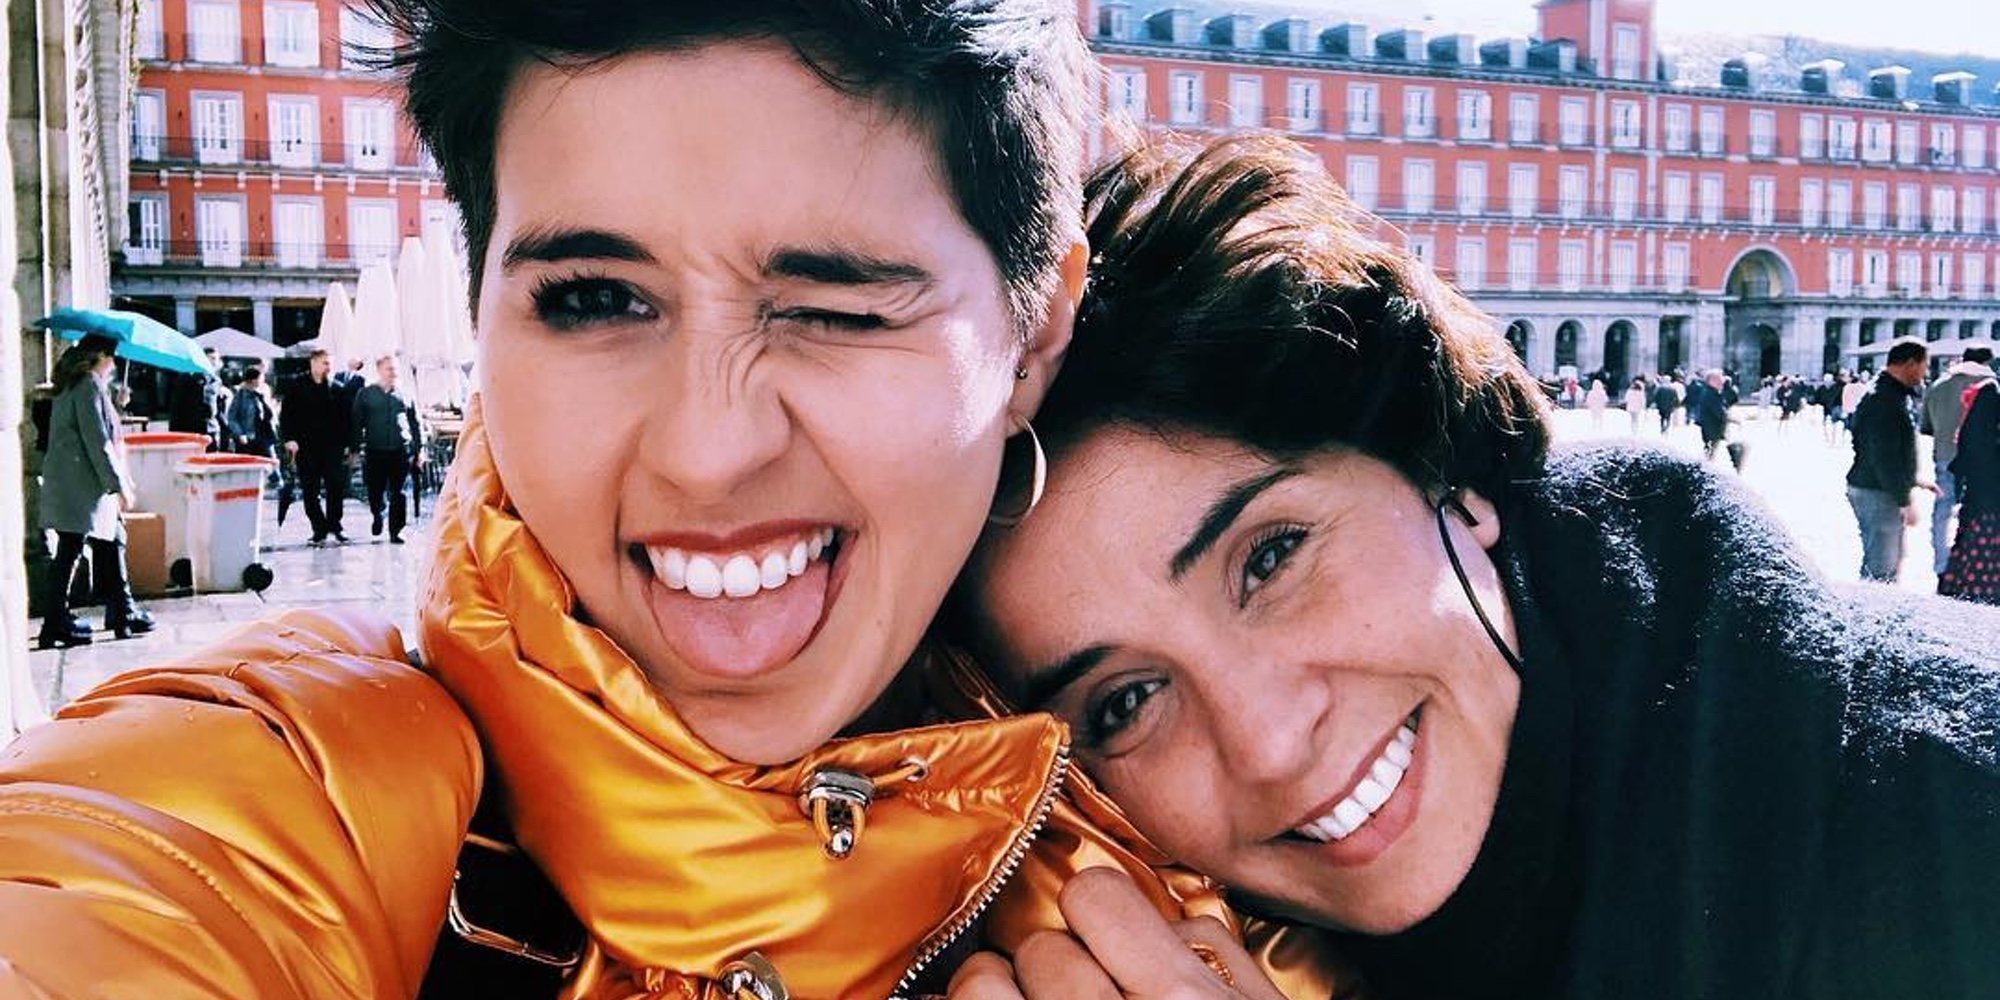 Alejandra Castelló y Babeth Ripoll conmemoran el Día de la Visibilidad Lésbica proclamando su amor